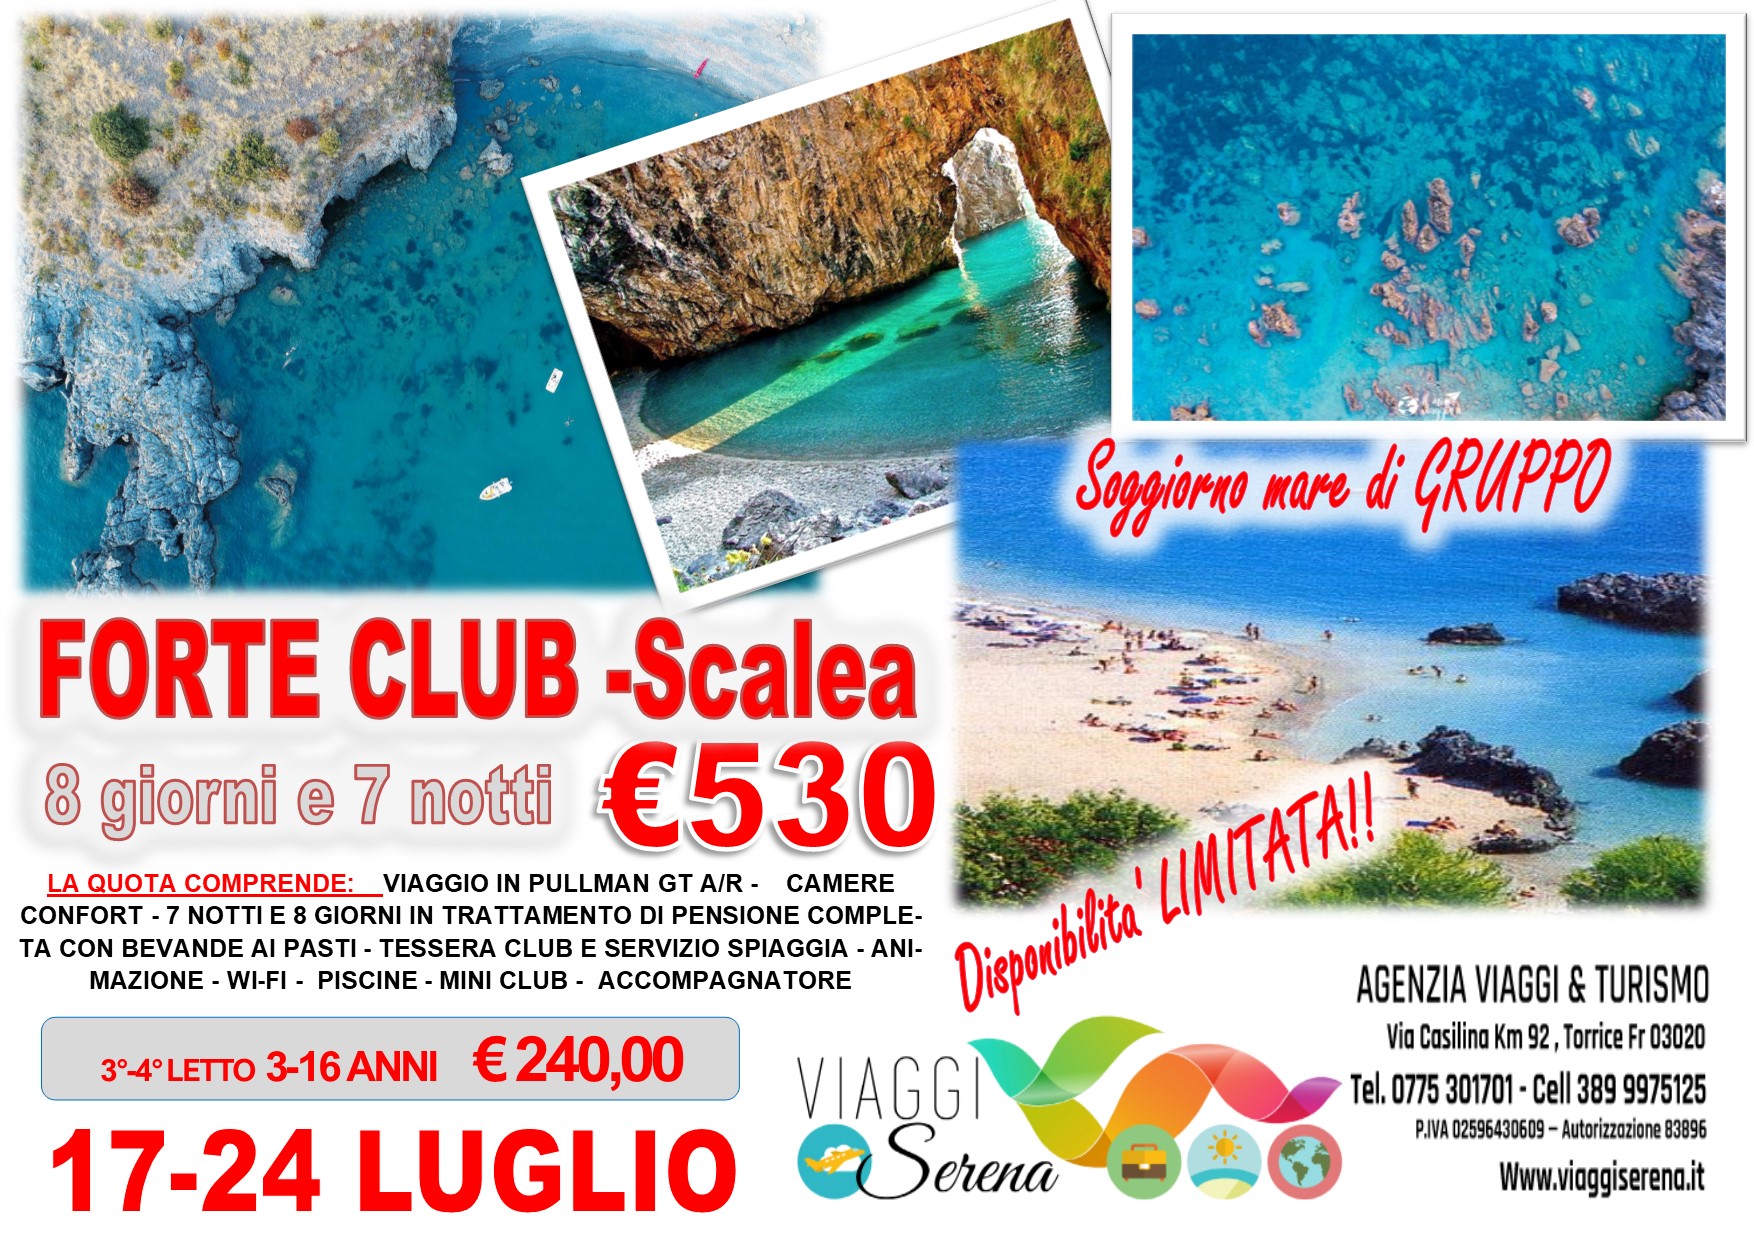 Viaggi di Gruppo: Soggiorno Mare FORTE CLUB -Salea 17-24 Luglio €530,00